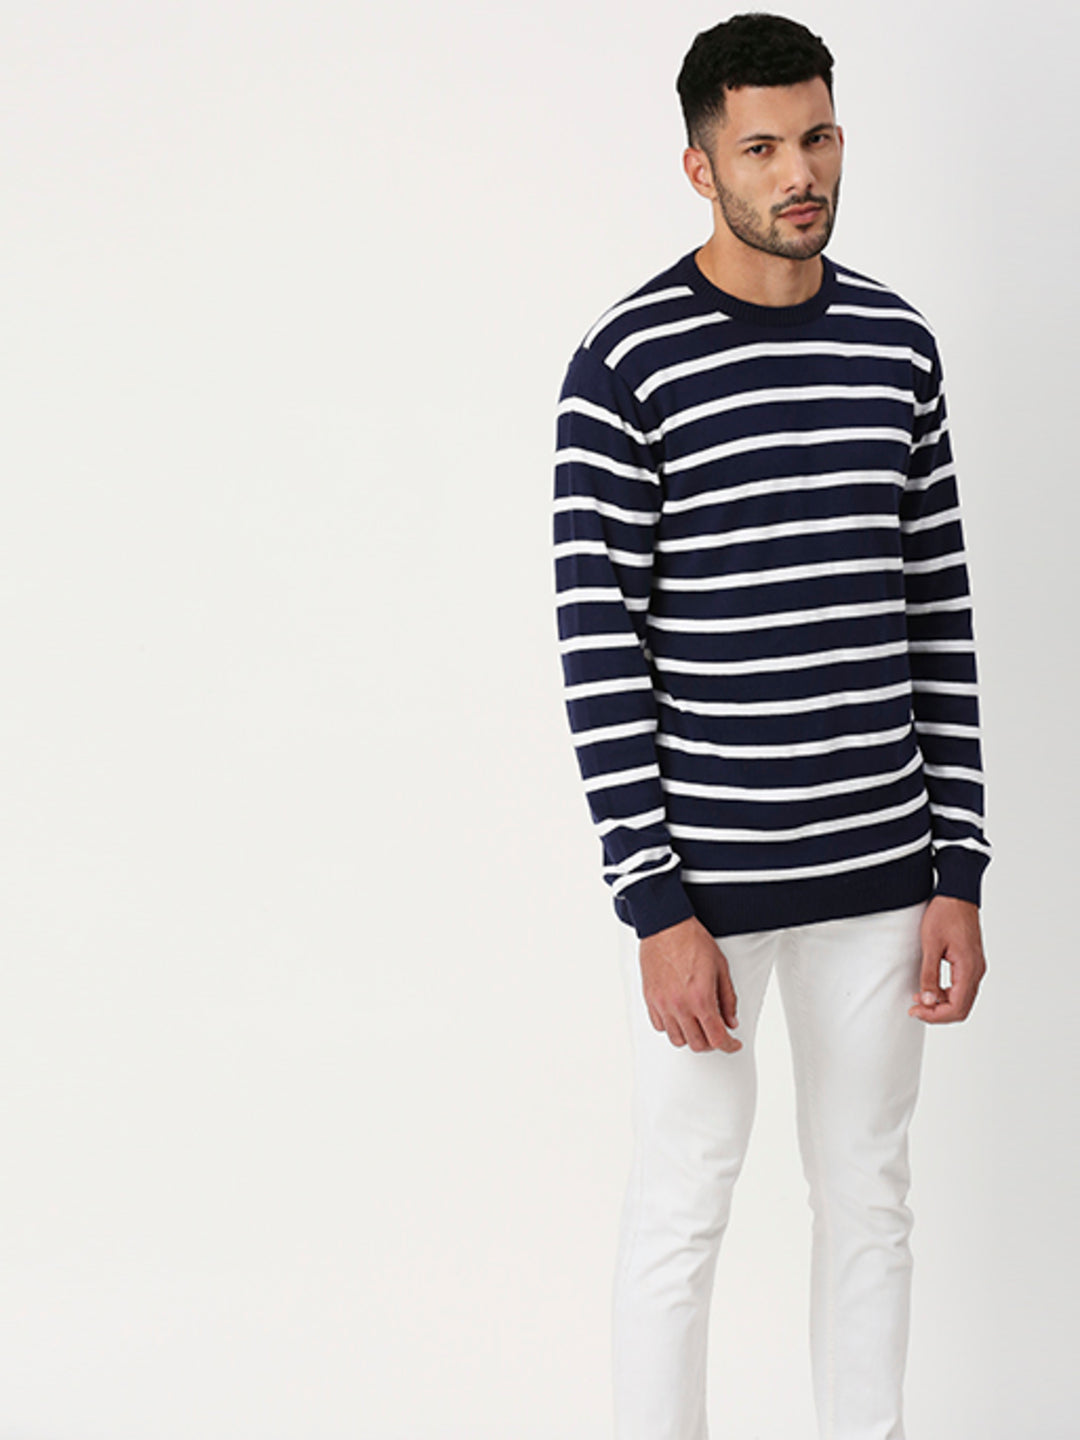 Hemsters Stripe Full Sleeve Sweatshirt